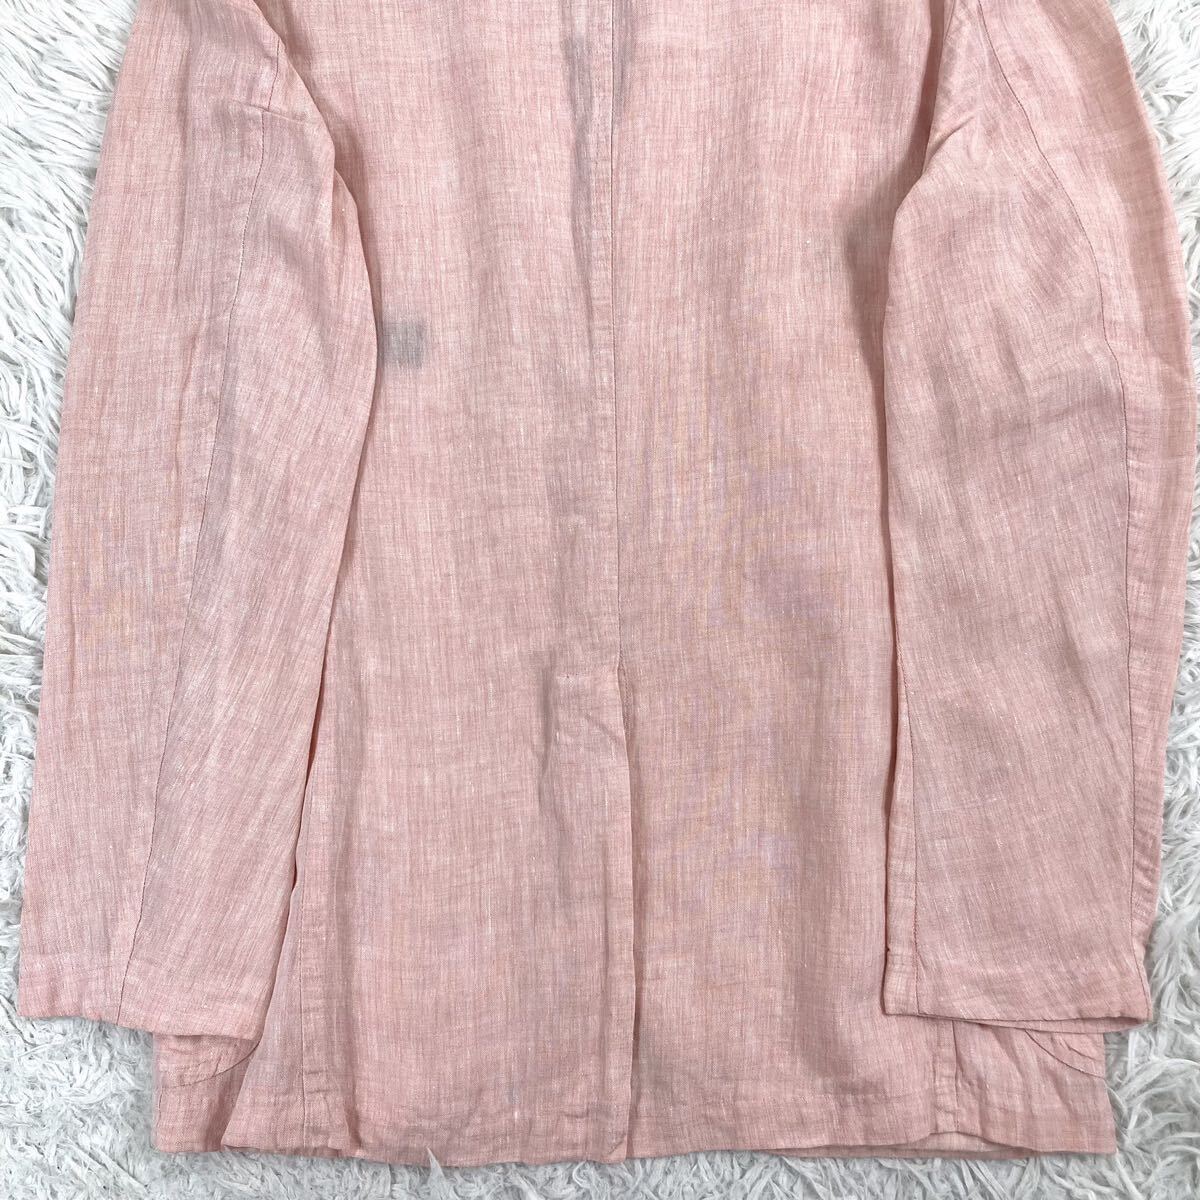  прекрасный товар /linen100%* TOMORROWLAND Tomorrowland tailored jacket внешний Anne темно синий лен материалы мужской легкий весна лето розовый серия необшитый на спине 